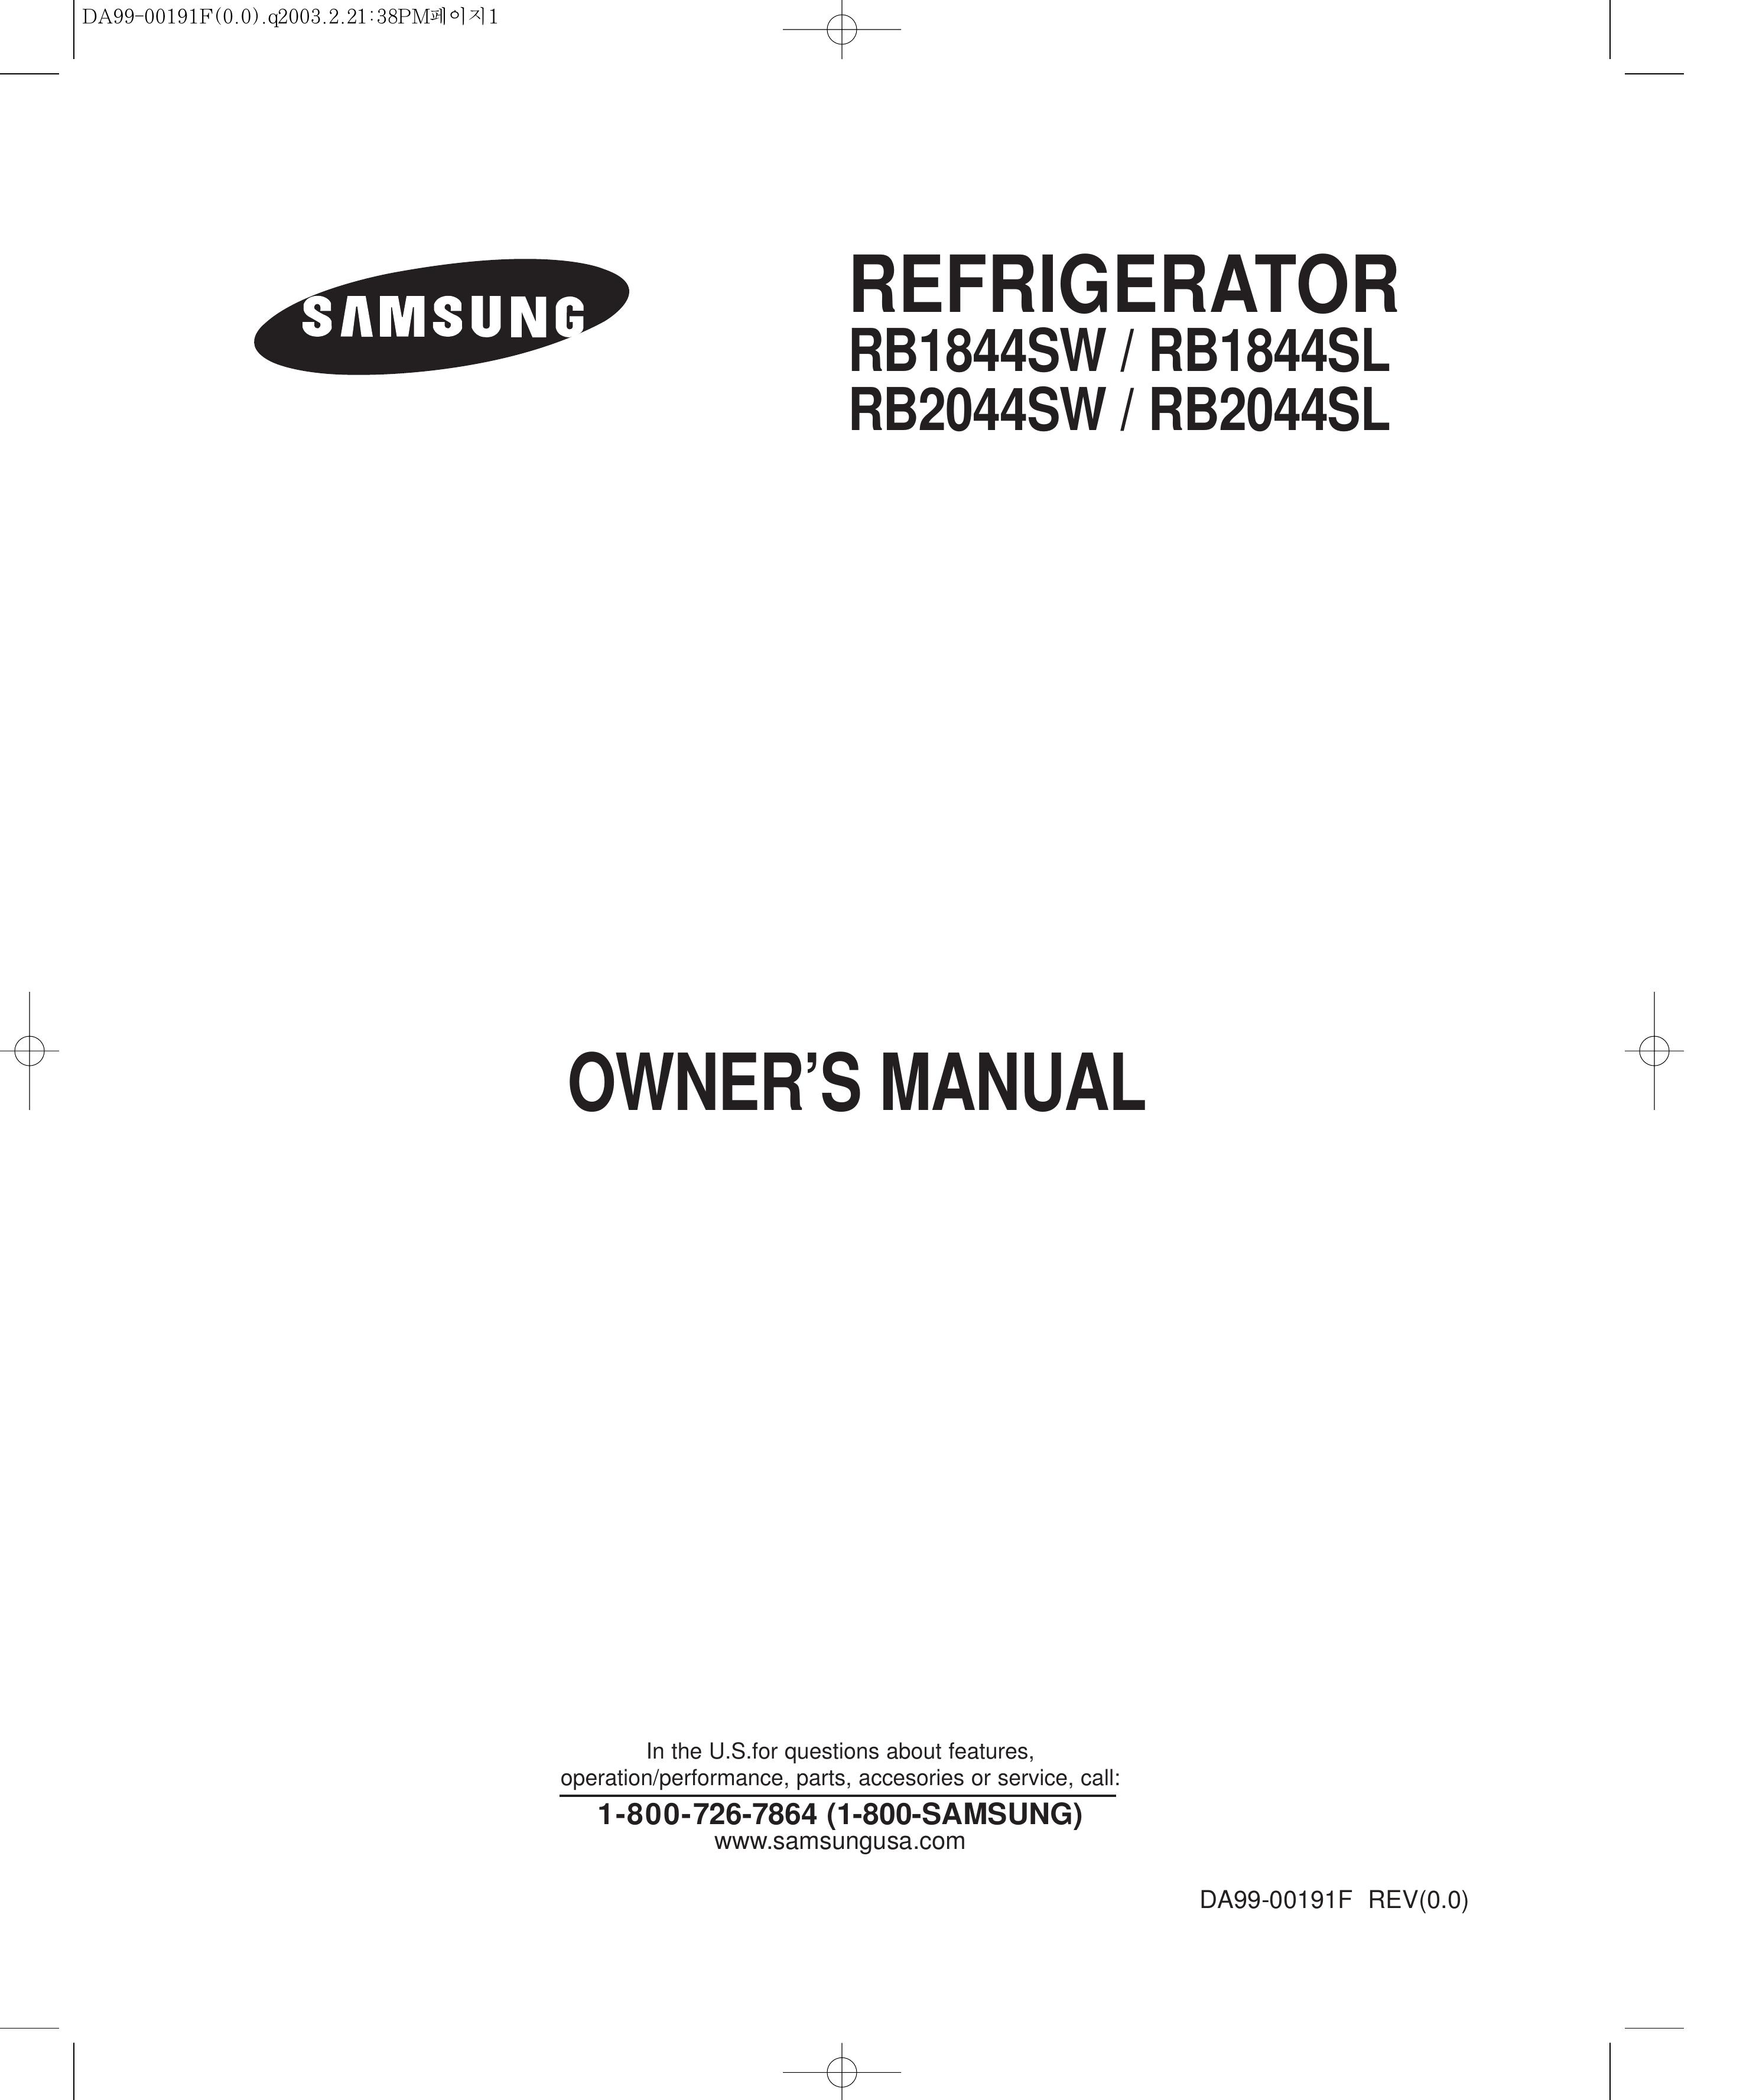 Samsung RB1844SL Refrigerator User Manual